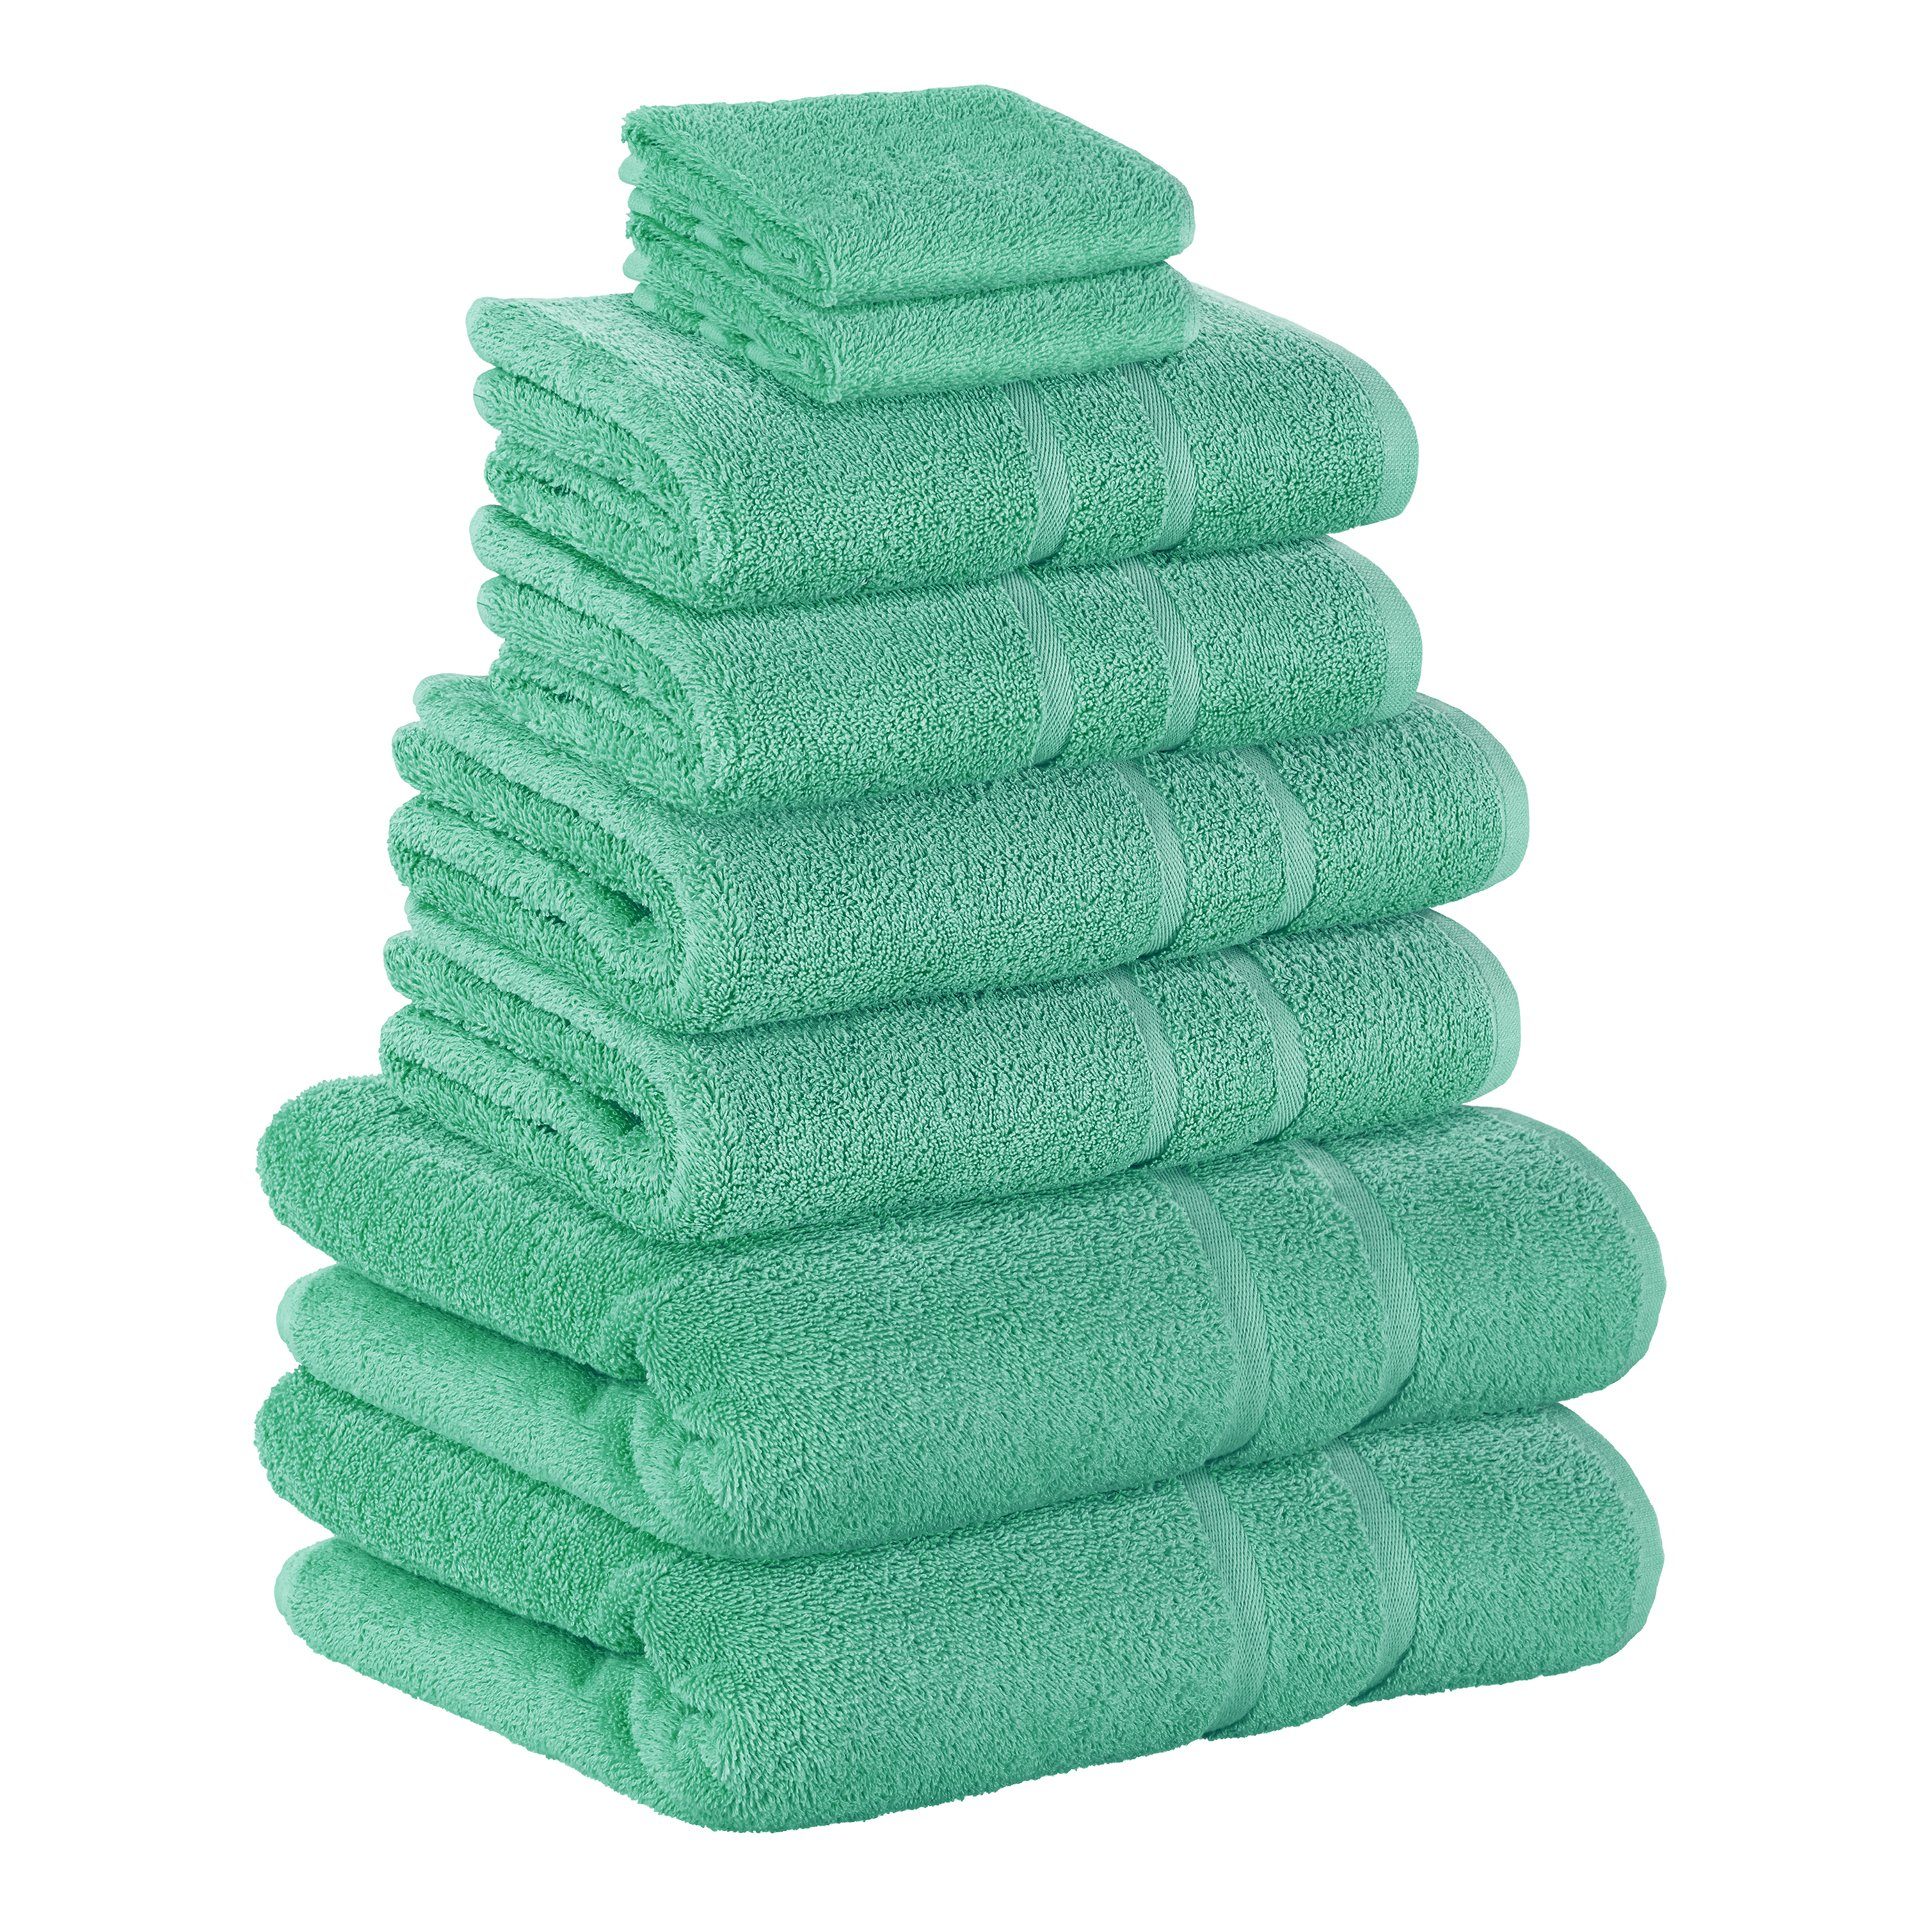 StickandShine Handtuch Set 2x Gästehandtuch 4x Handtücher 2x Duschtücher als SET in verschiedenen Farben (8 Teilig) 100% Baumwolle 500 GSM Frottee 8er Handtuch Pack, 100% Baumwolle 500 GSM Smaragdgrün